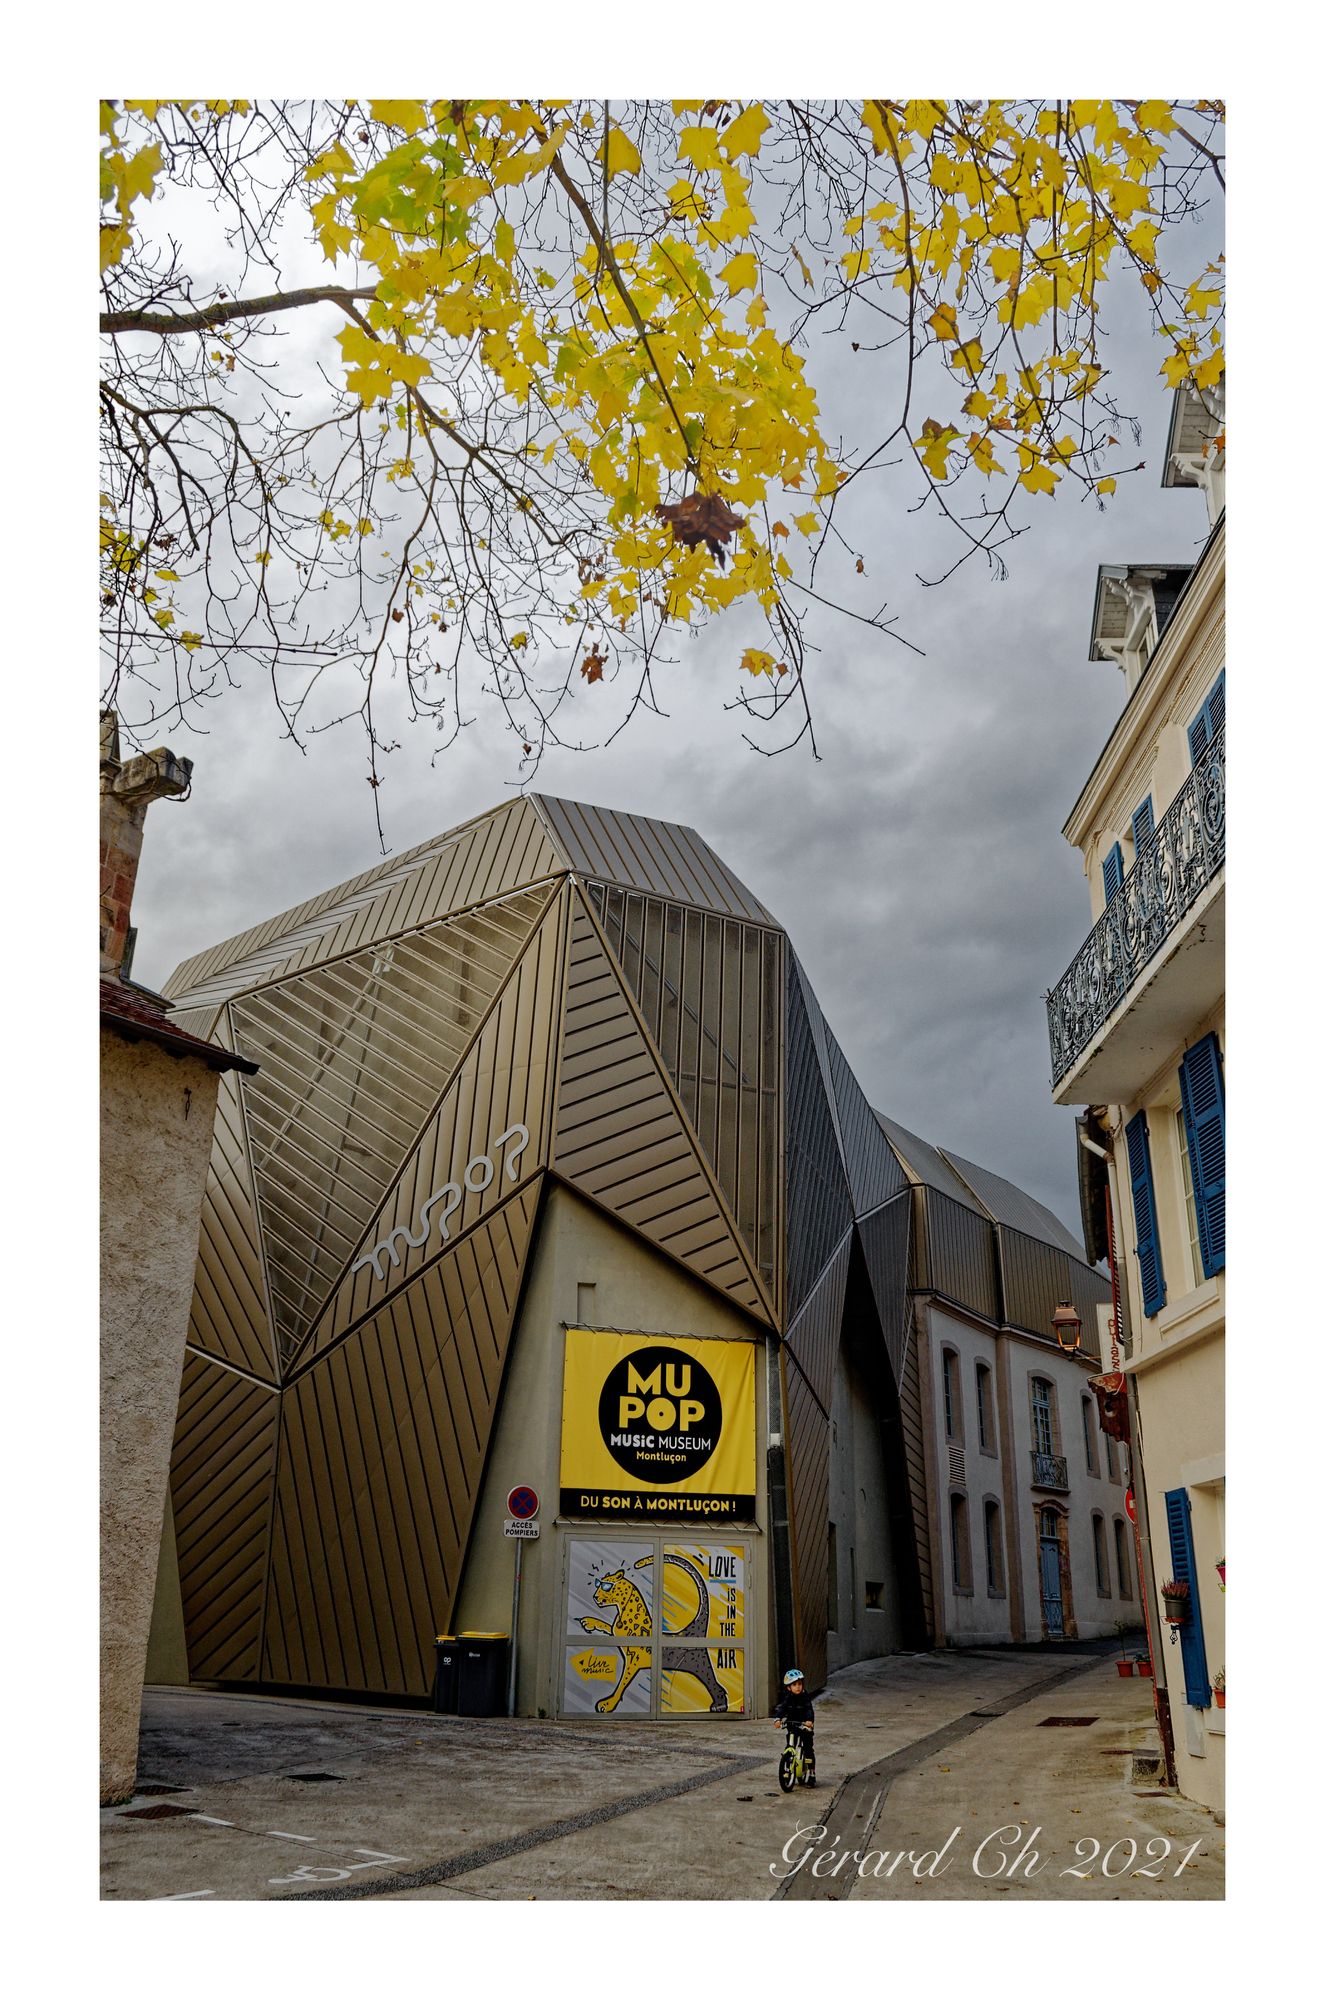 L'entrée du MuPop, au n°3 rue Notre-Dame à Montluçon - Allier Crédit photo : Gérard ch © 2021